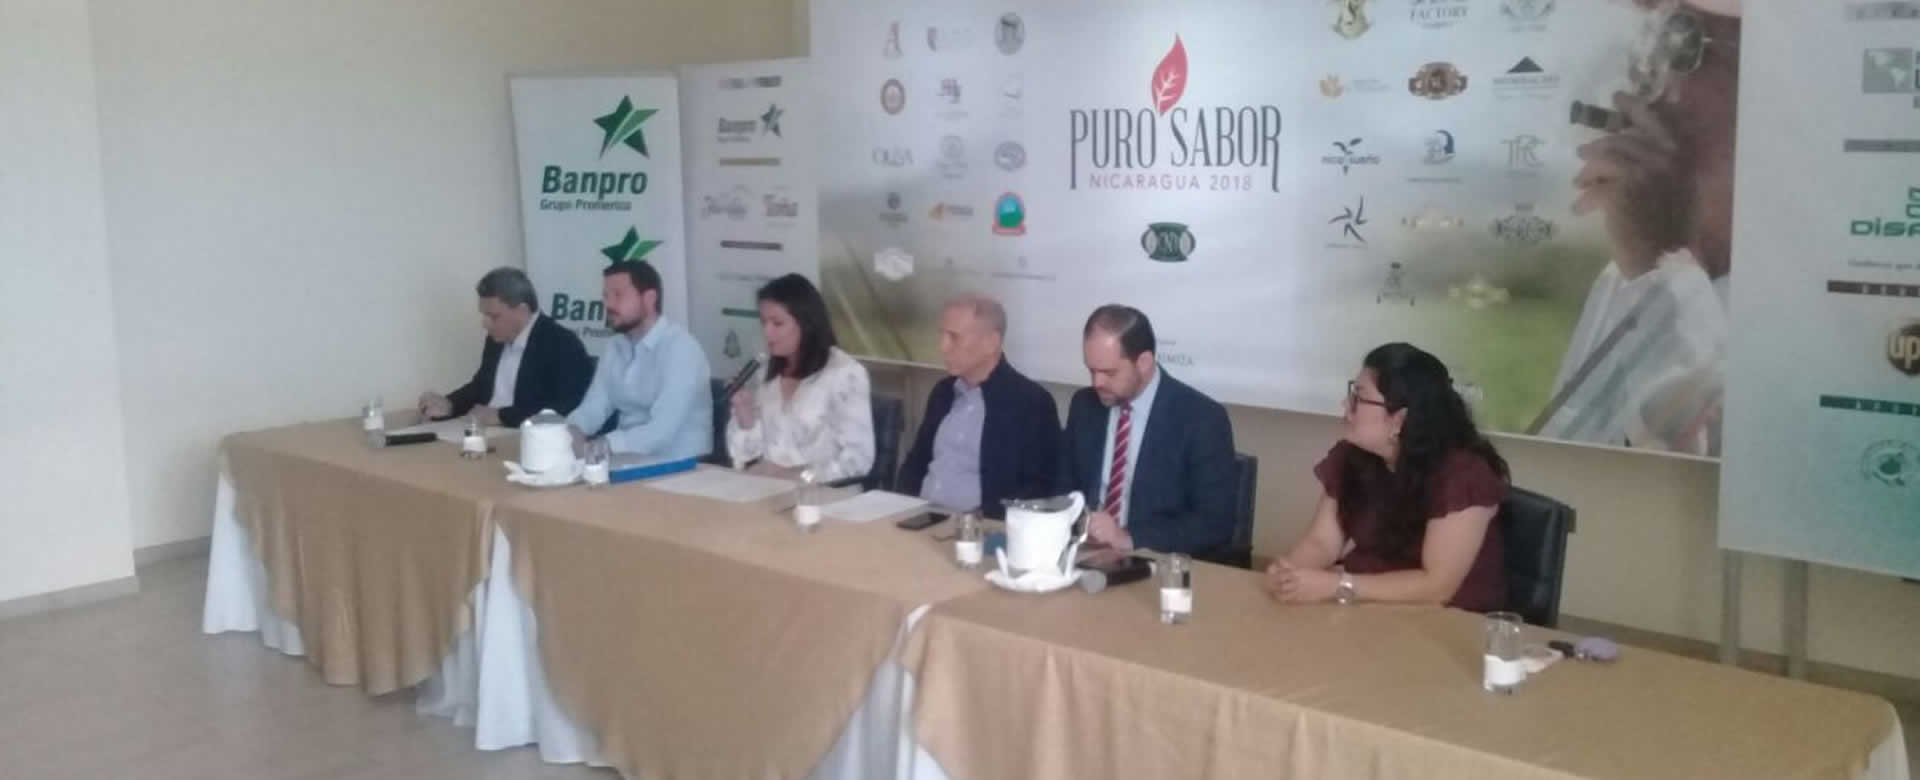 Granada lista para recibir al séptimo Festival "Puro Sabor"f